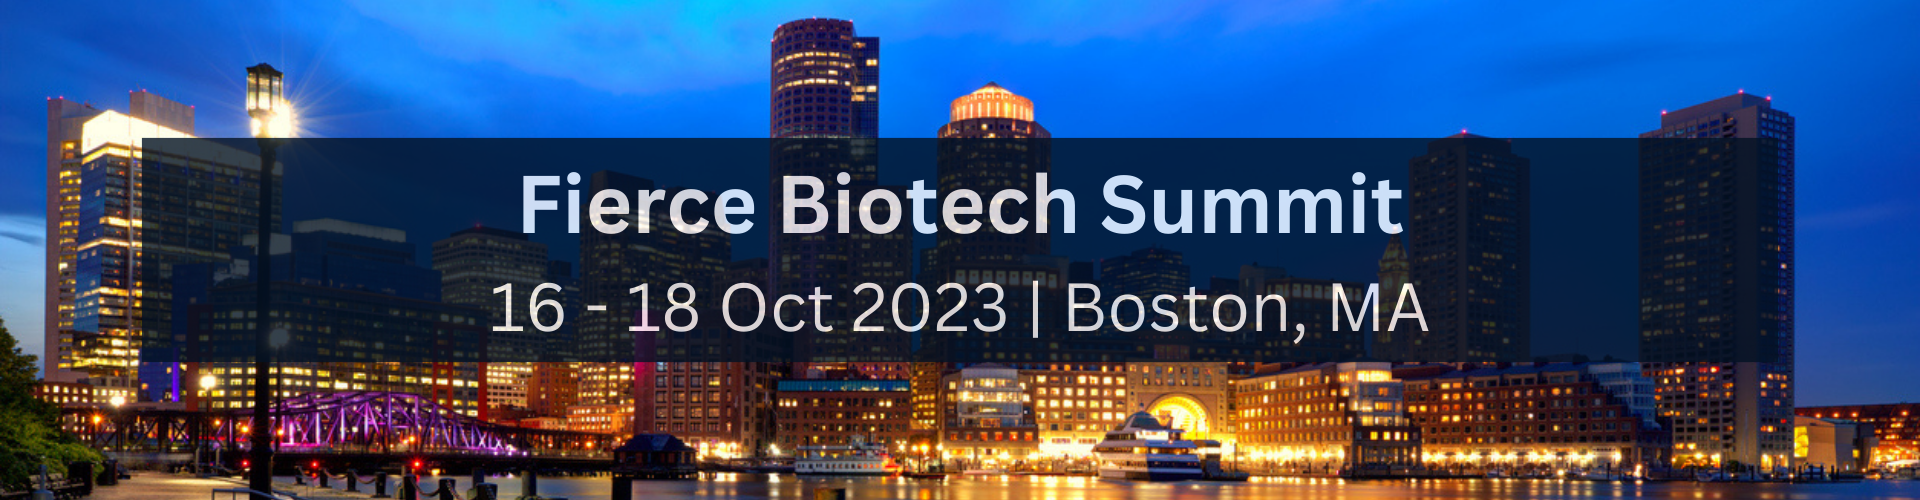 Fierce Biotech Summit 16 - 18 Oct 2023  Boston, MA